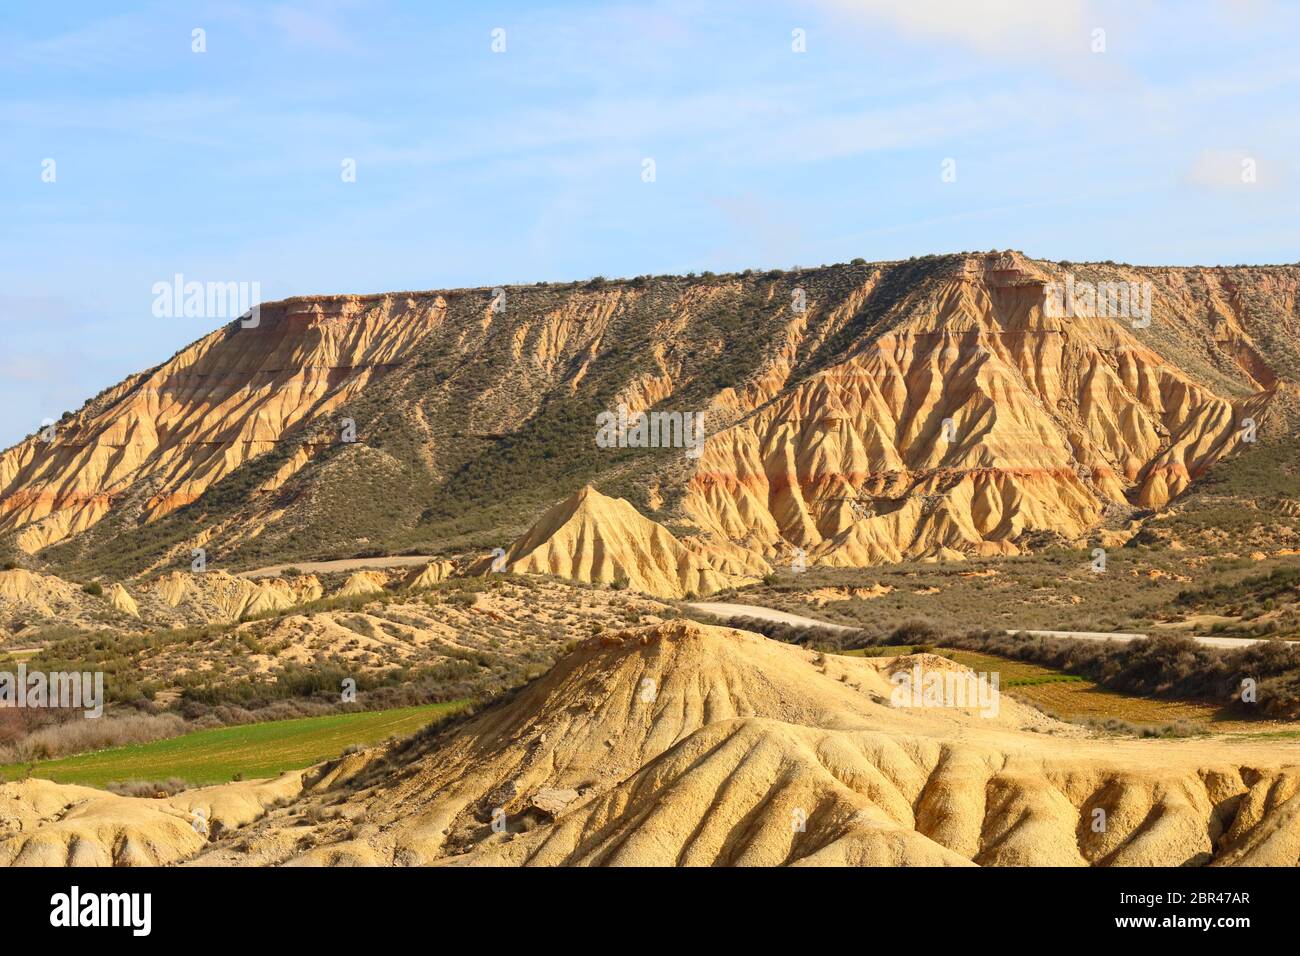 Fascinantes formas terrestres y elementos erosionales en la región natural semi-desértica Bardenas reales, Reserva de la Biosfera de la UNESCO, Navarra, España Foto de stock